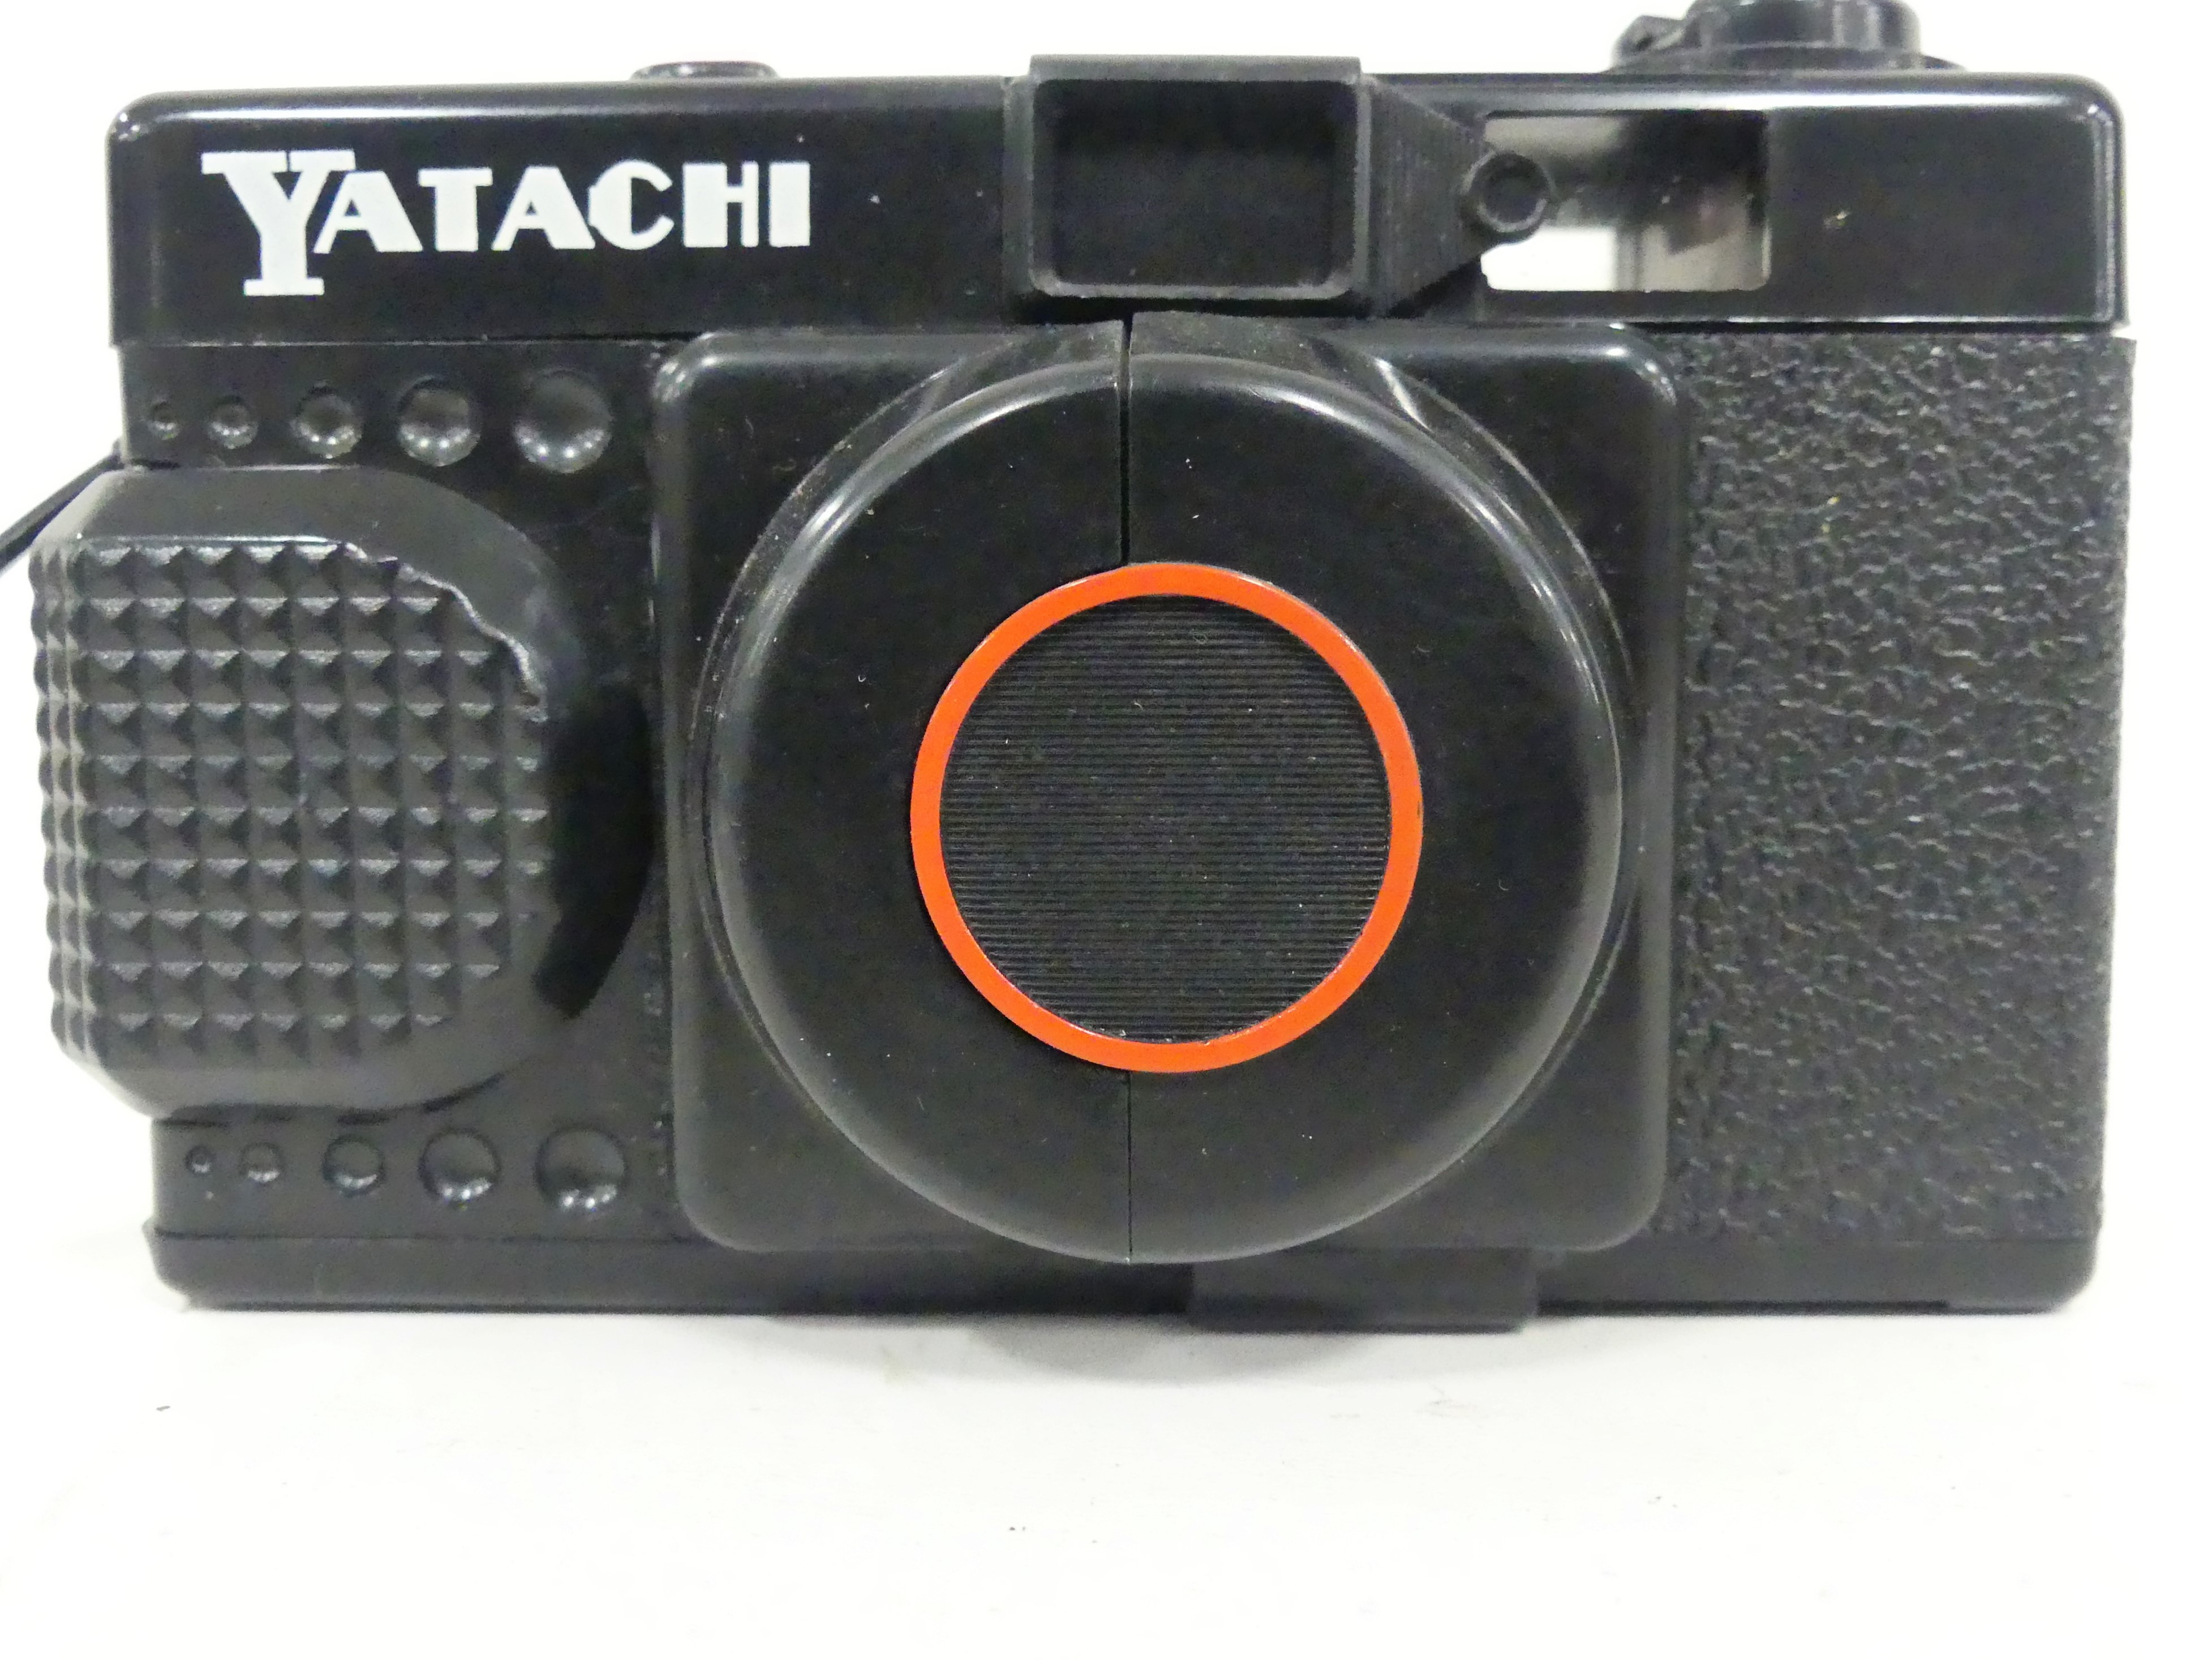 Yatachi camera 1985